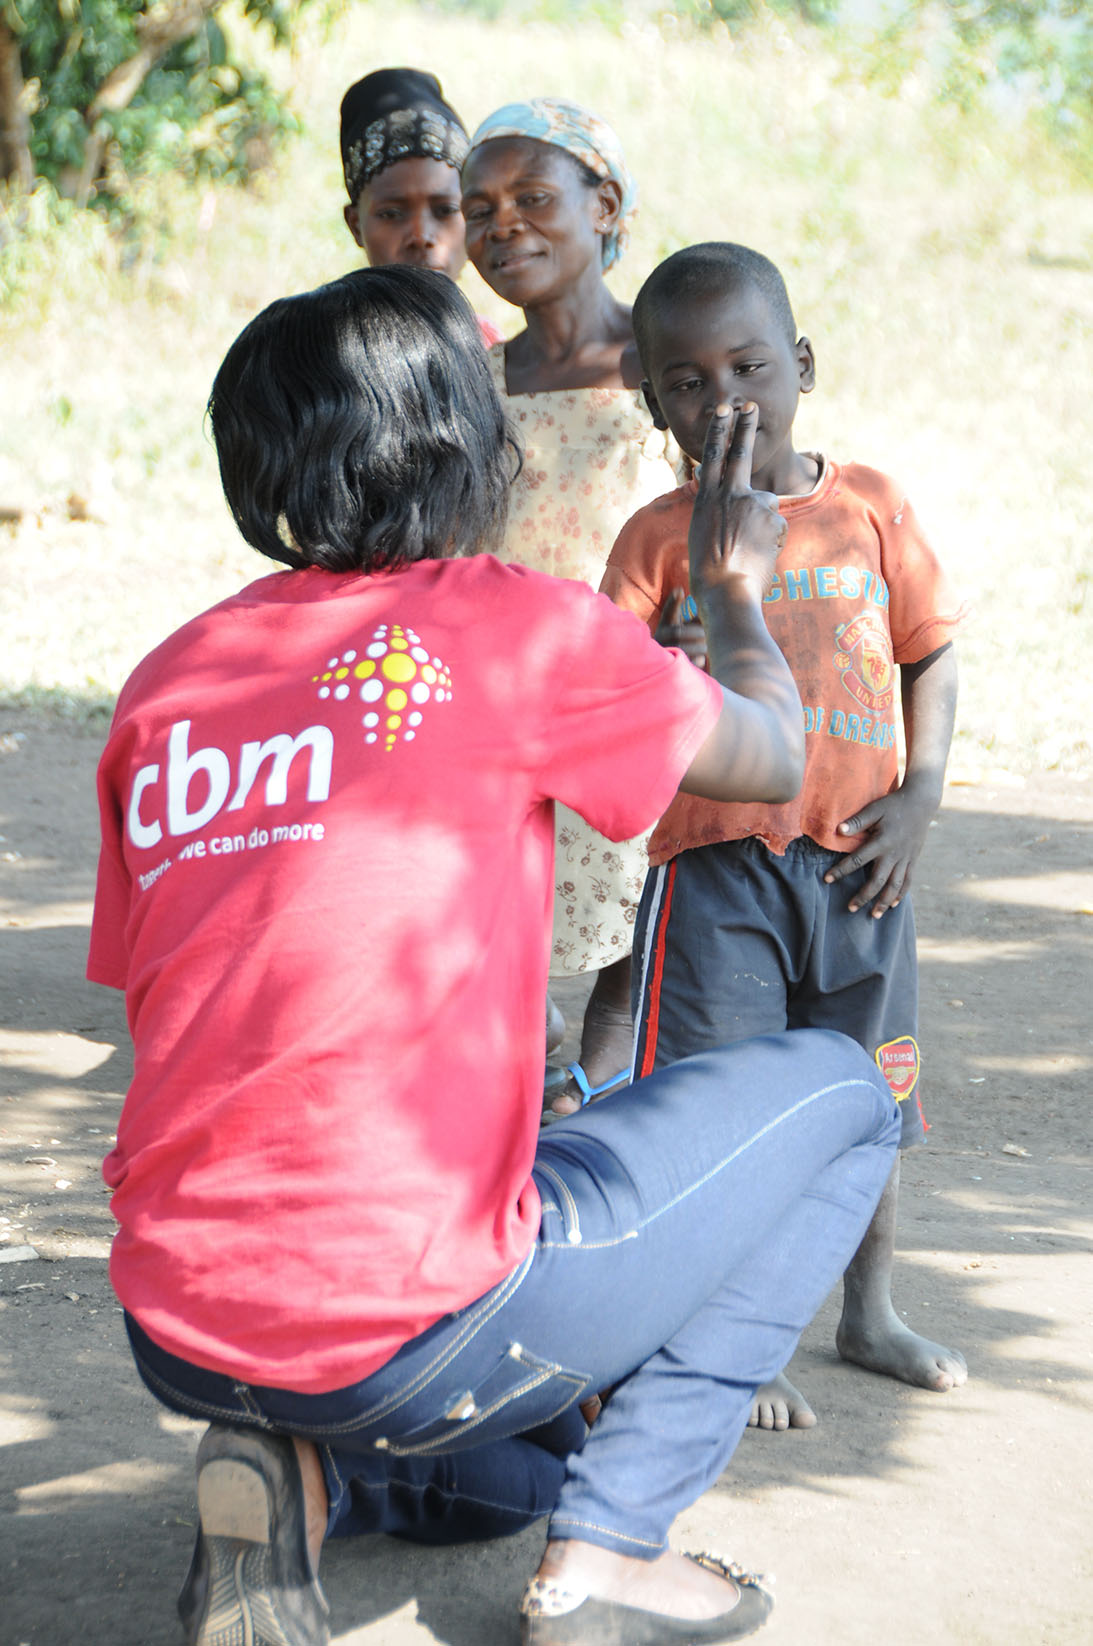 Une femme accroupie examine la vision d’un gamin en Ouganda au moyen d’exercices des doigts. A l’arrière plan, deux femmes l’observent.